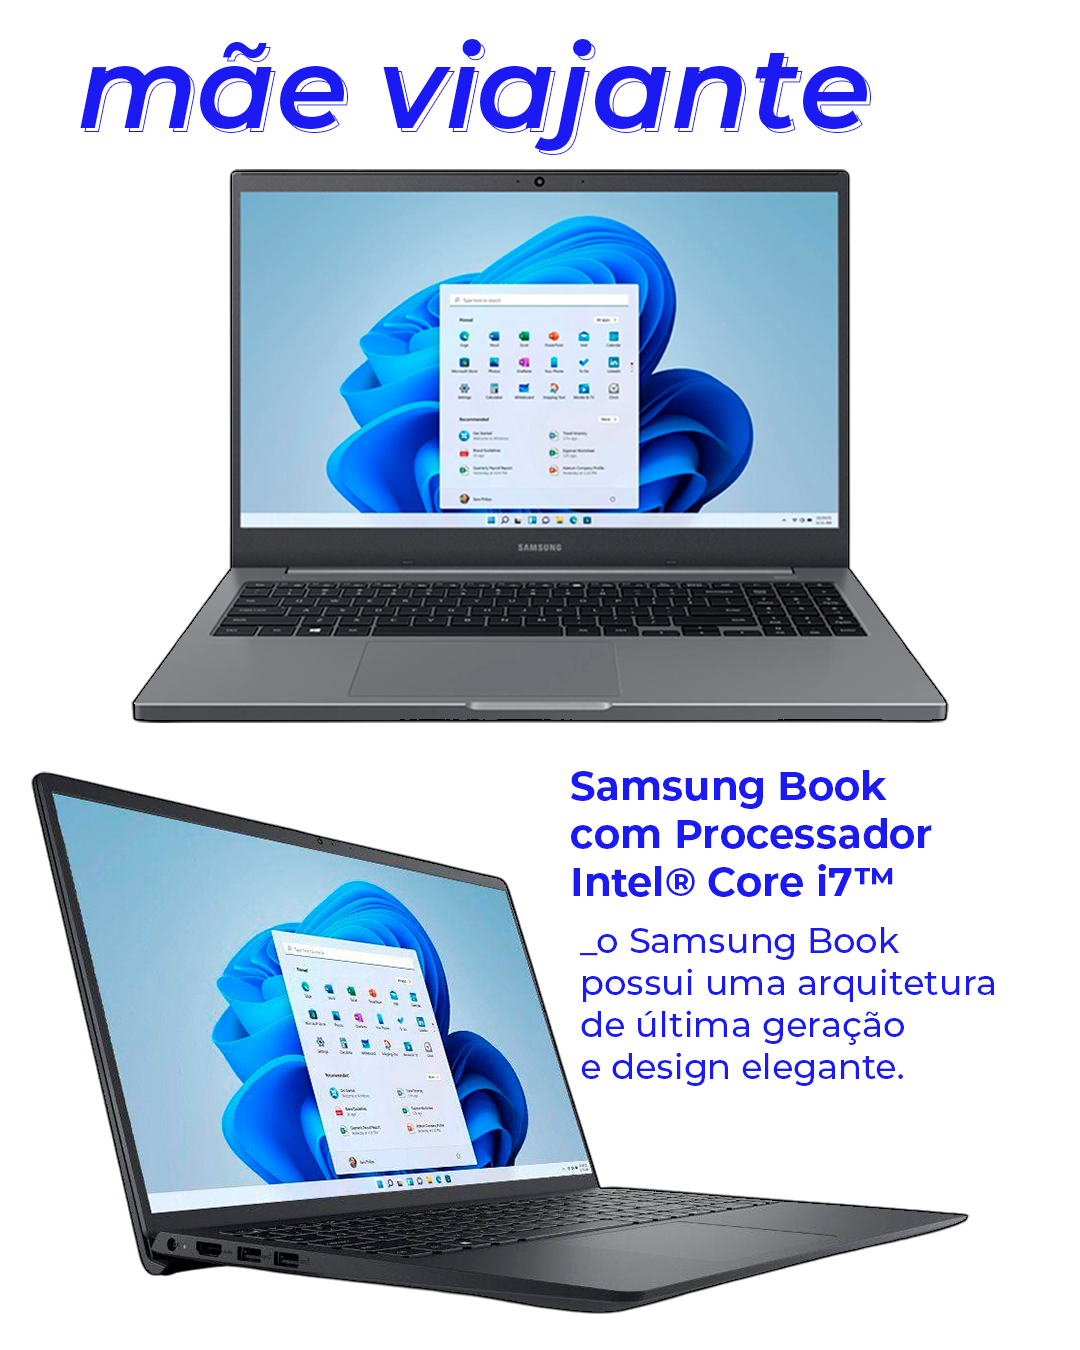 Samsung Book com Processador Intel® Core i7™ - Notebook - Dia das mães - Notebook - Notebook - https://stealthelook.com.br